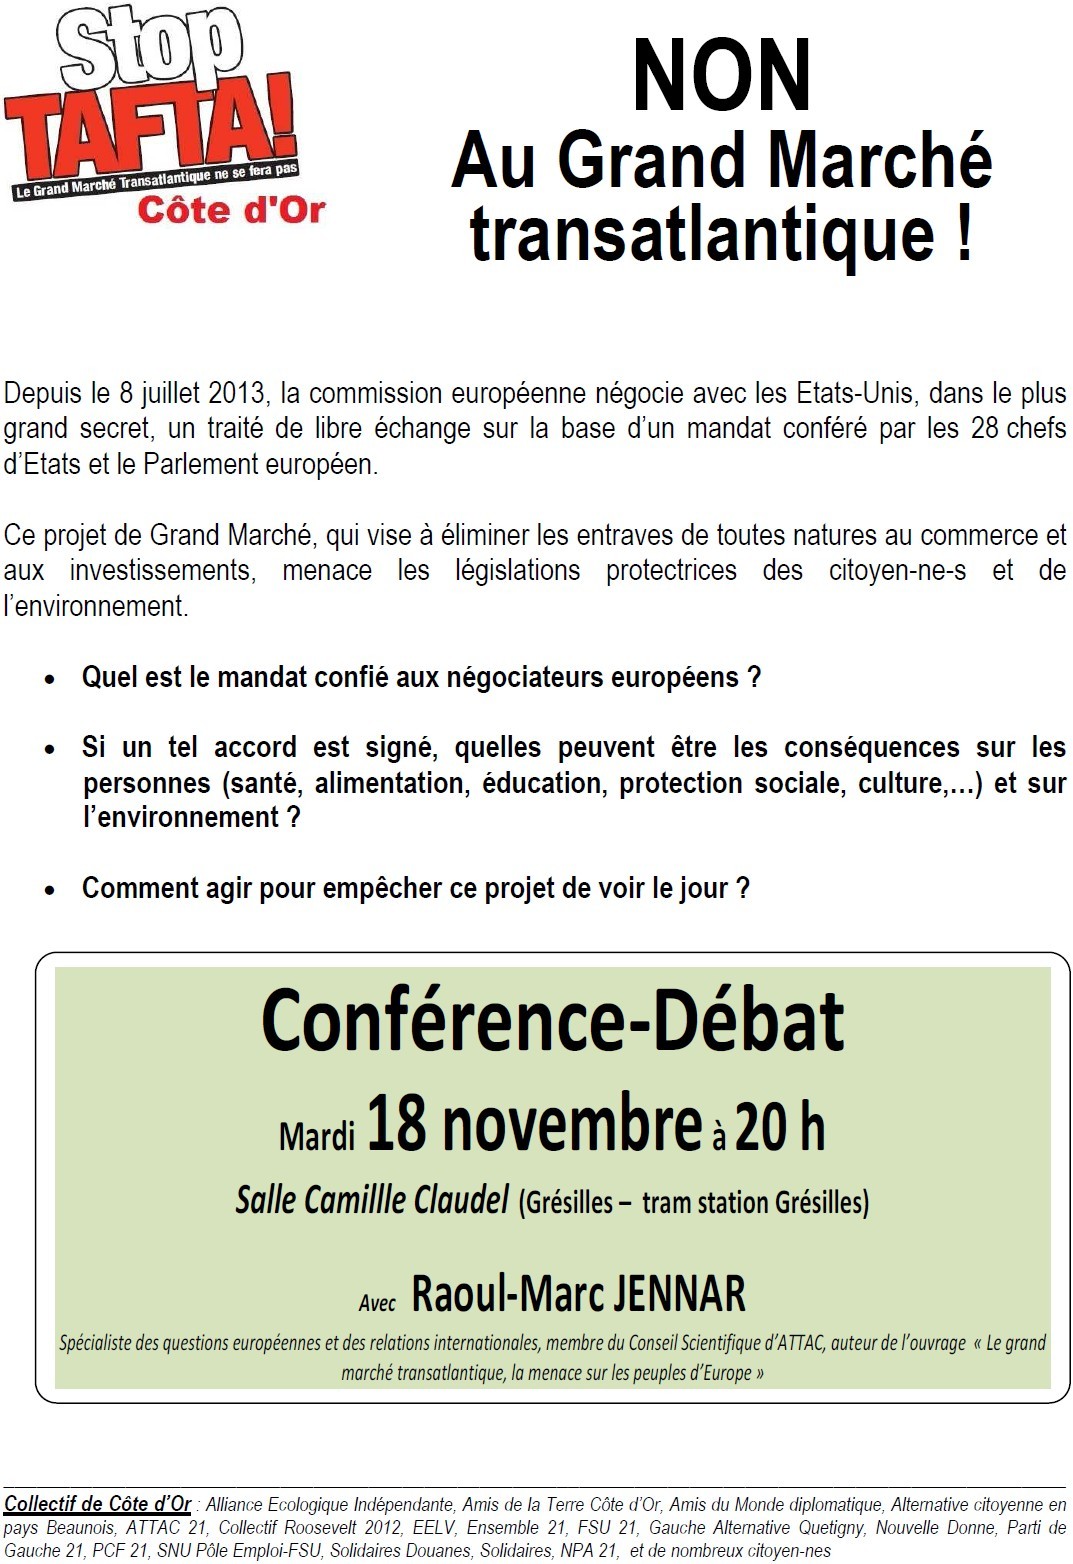 Conférence-débat à Dijon mardi 18 novembre à 20 h avec Raoul Marc Jennar